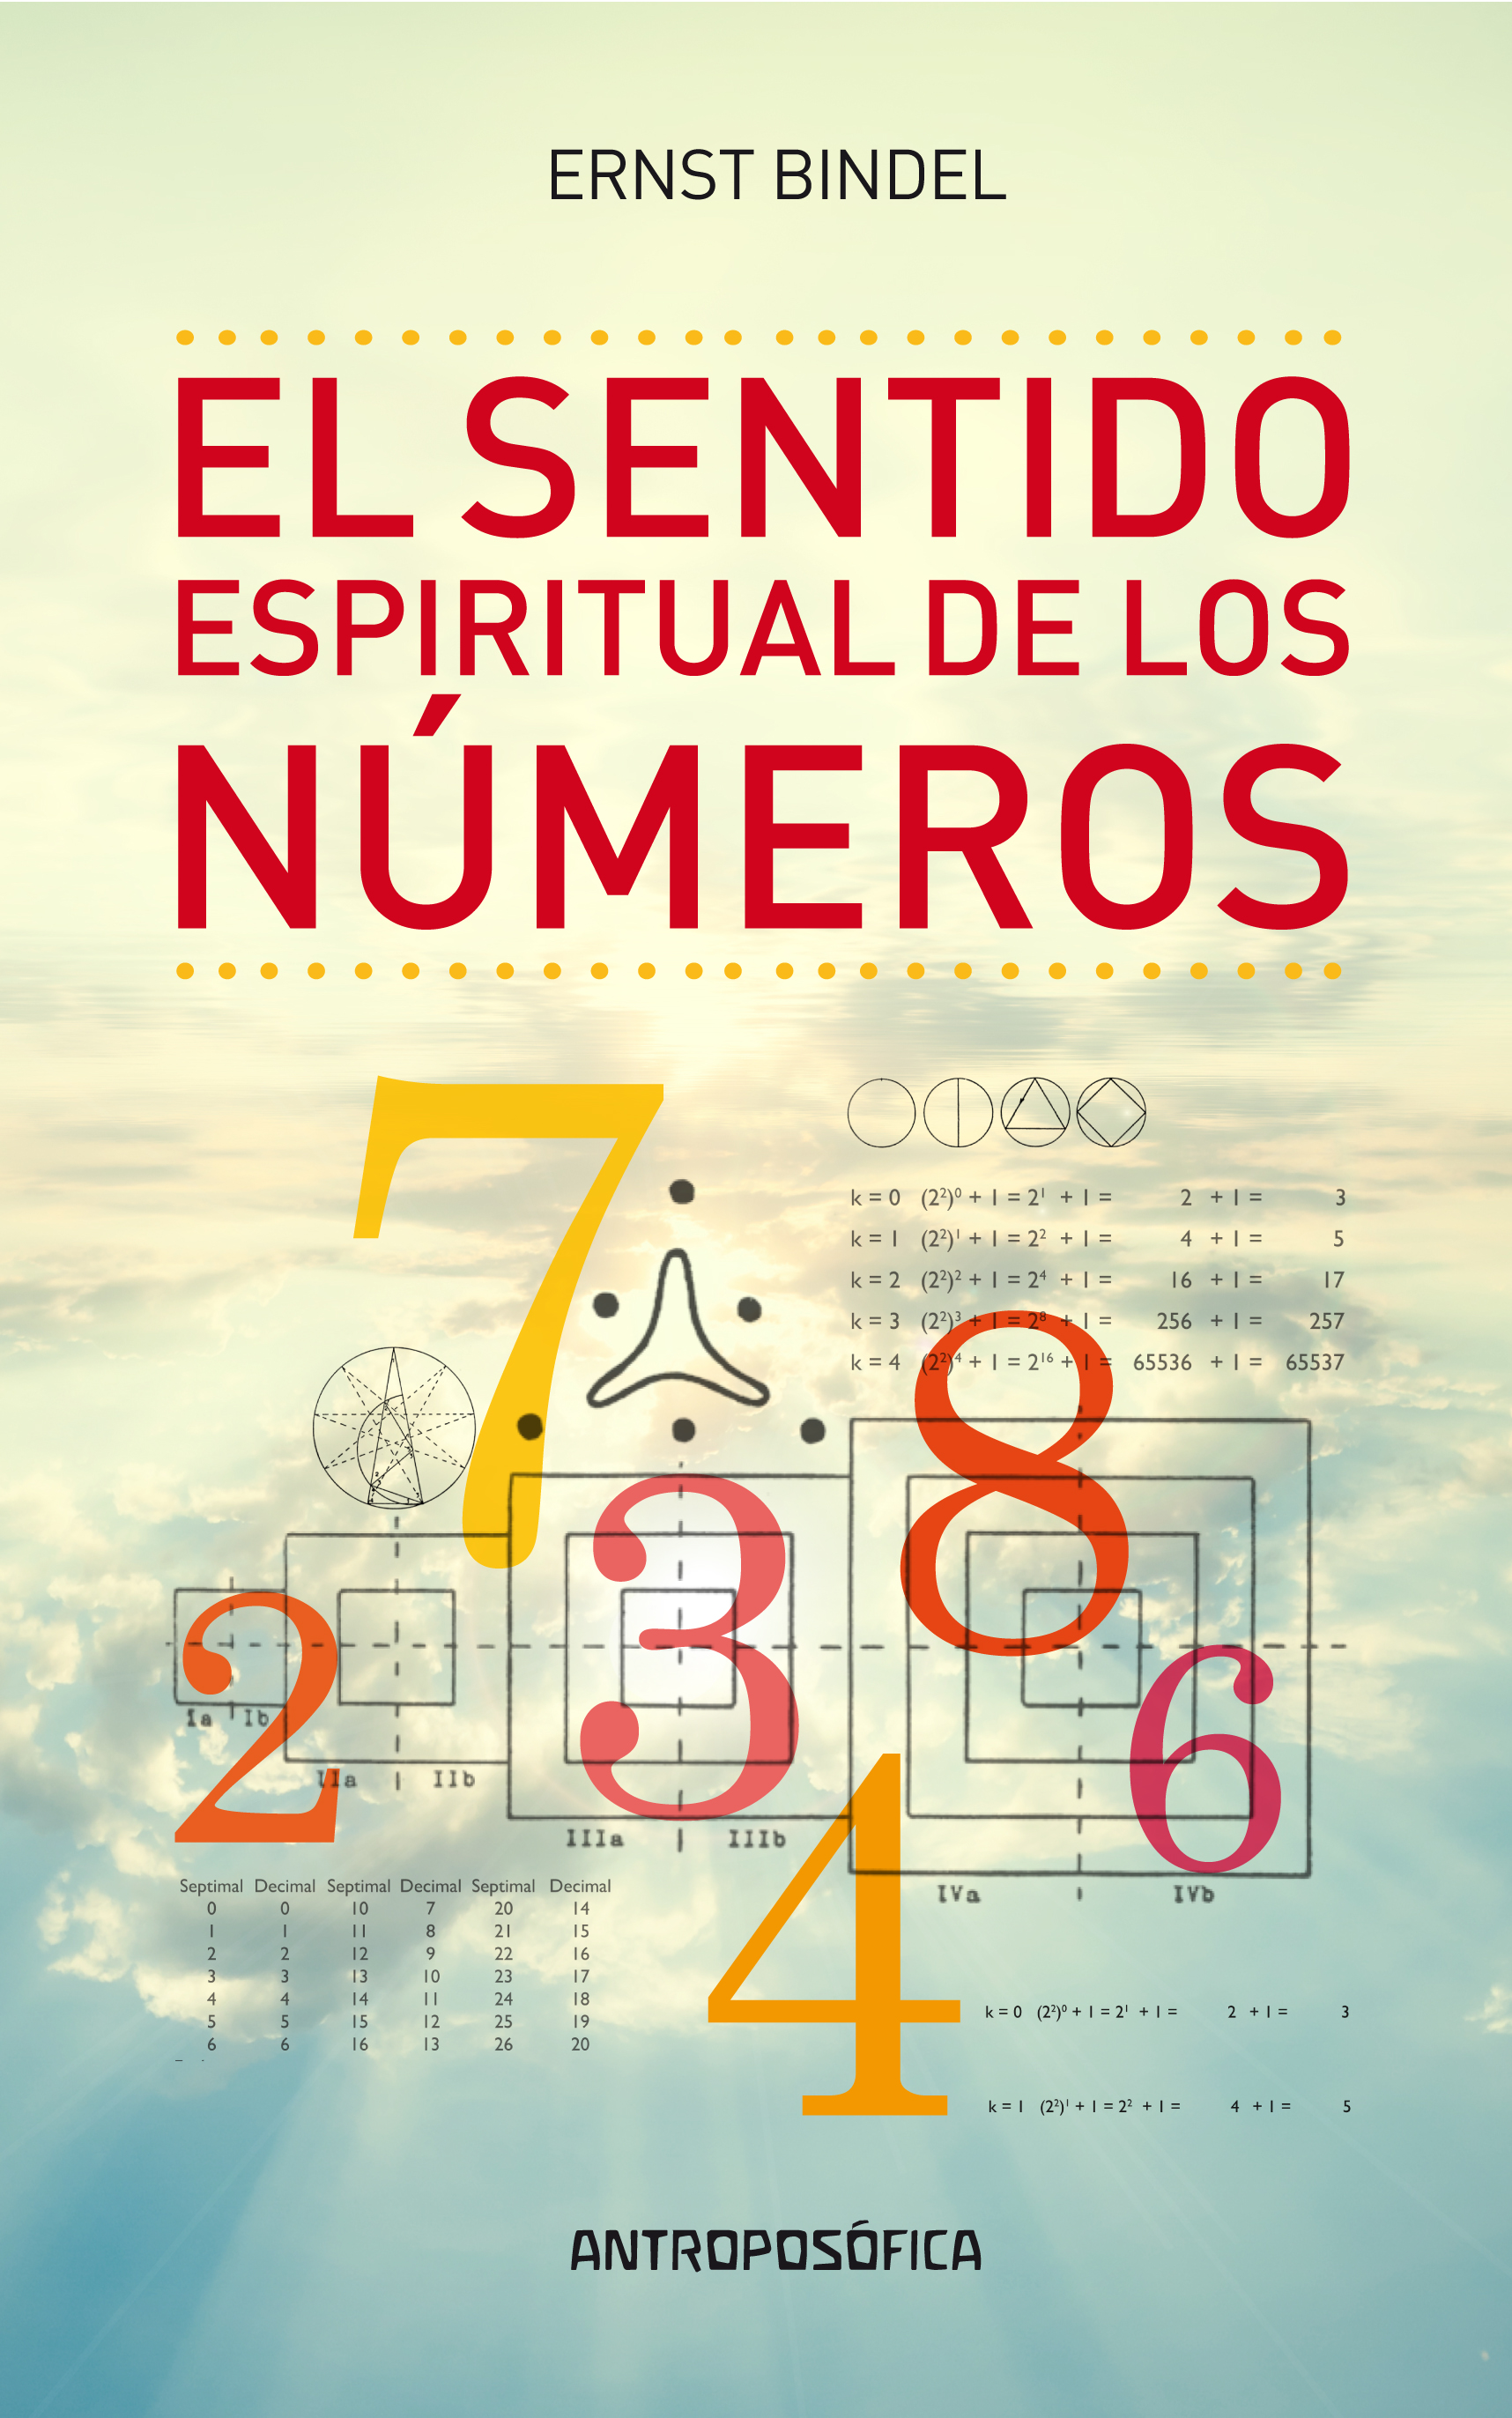 
            El sentido espiritual de los números